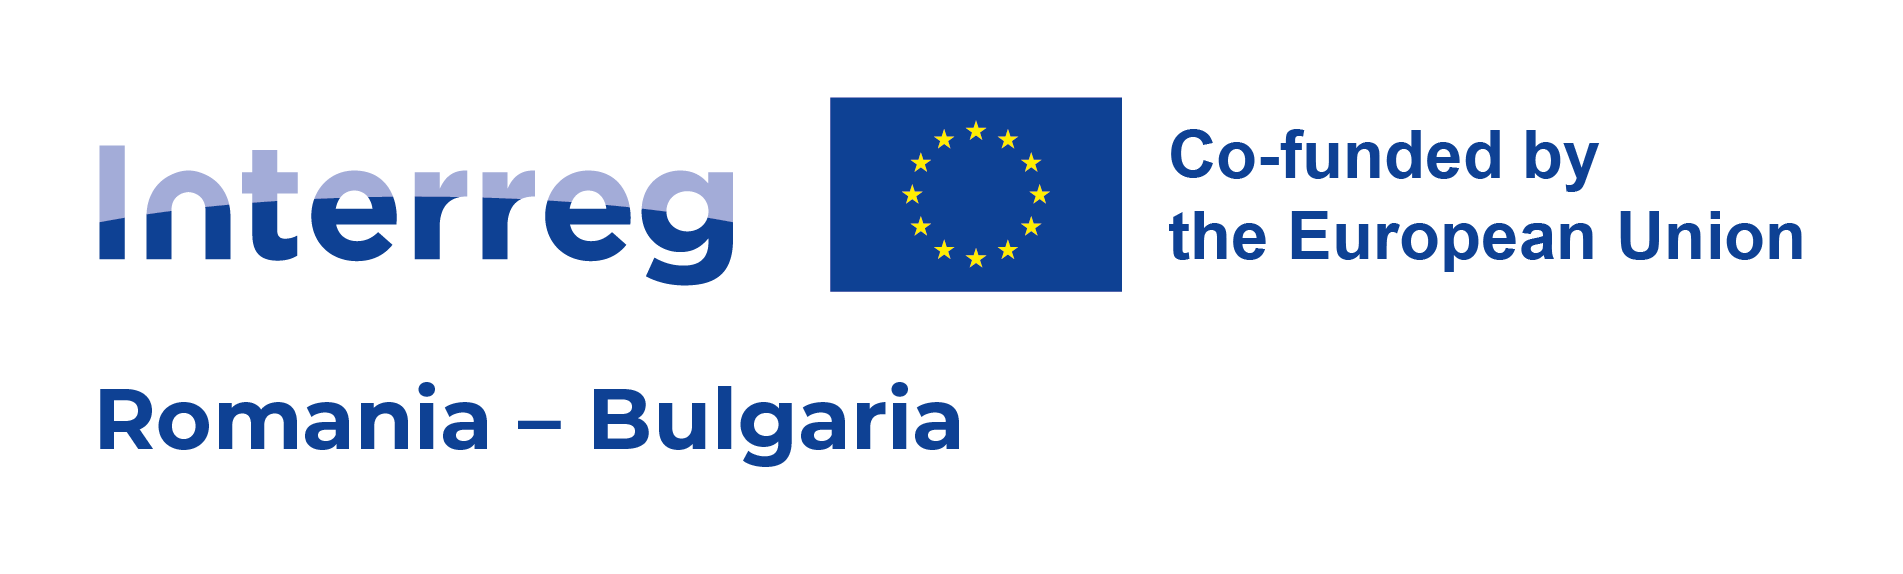 С 15 млн. евро програмата за териториално сътрудничество между Румъния и България подкрепя проекти в областта на образованието 